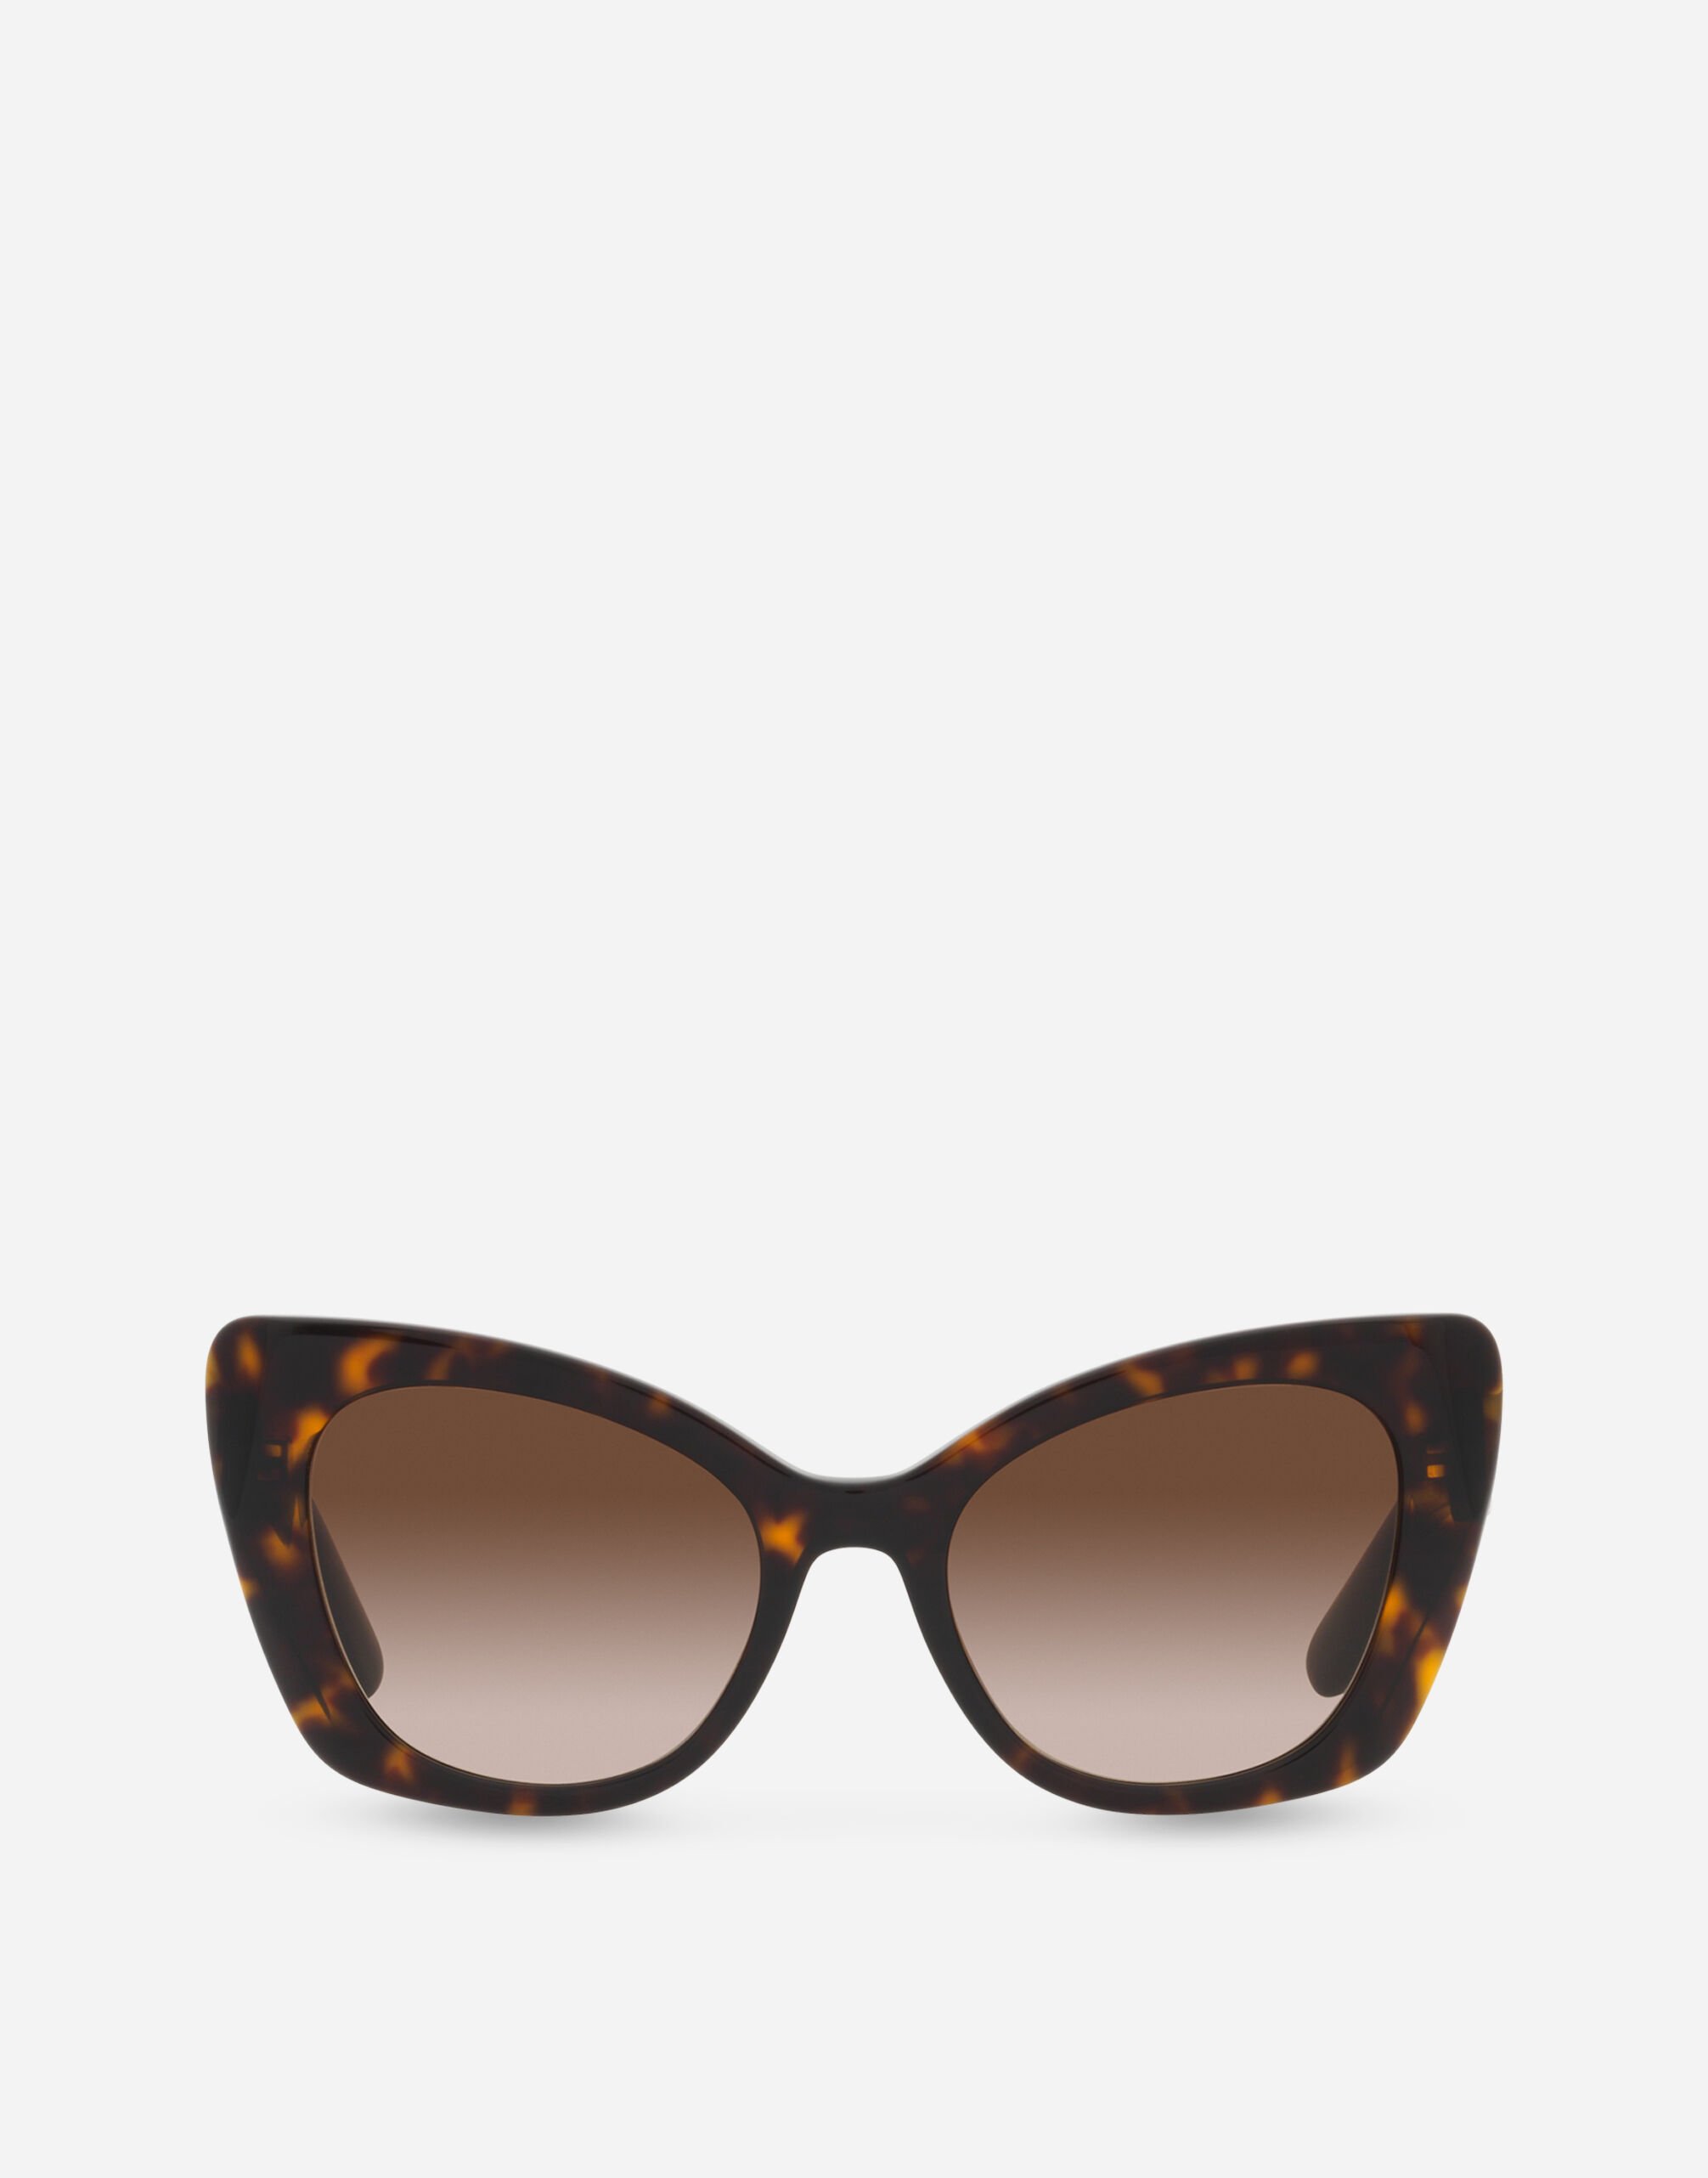 Dolce & Gabbana DG Crossed sunglasses Black VG4439VP187